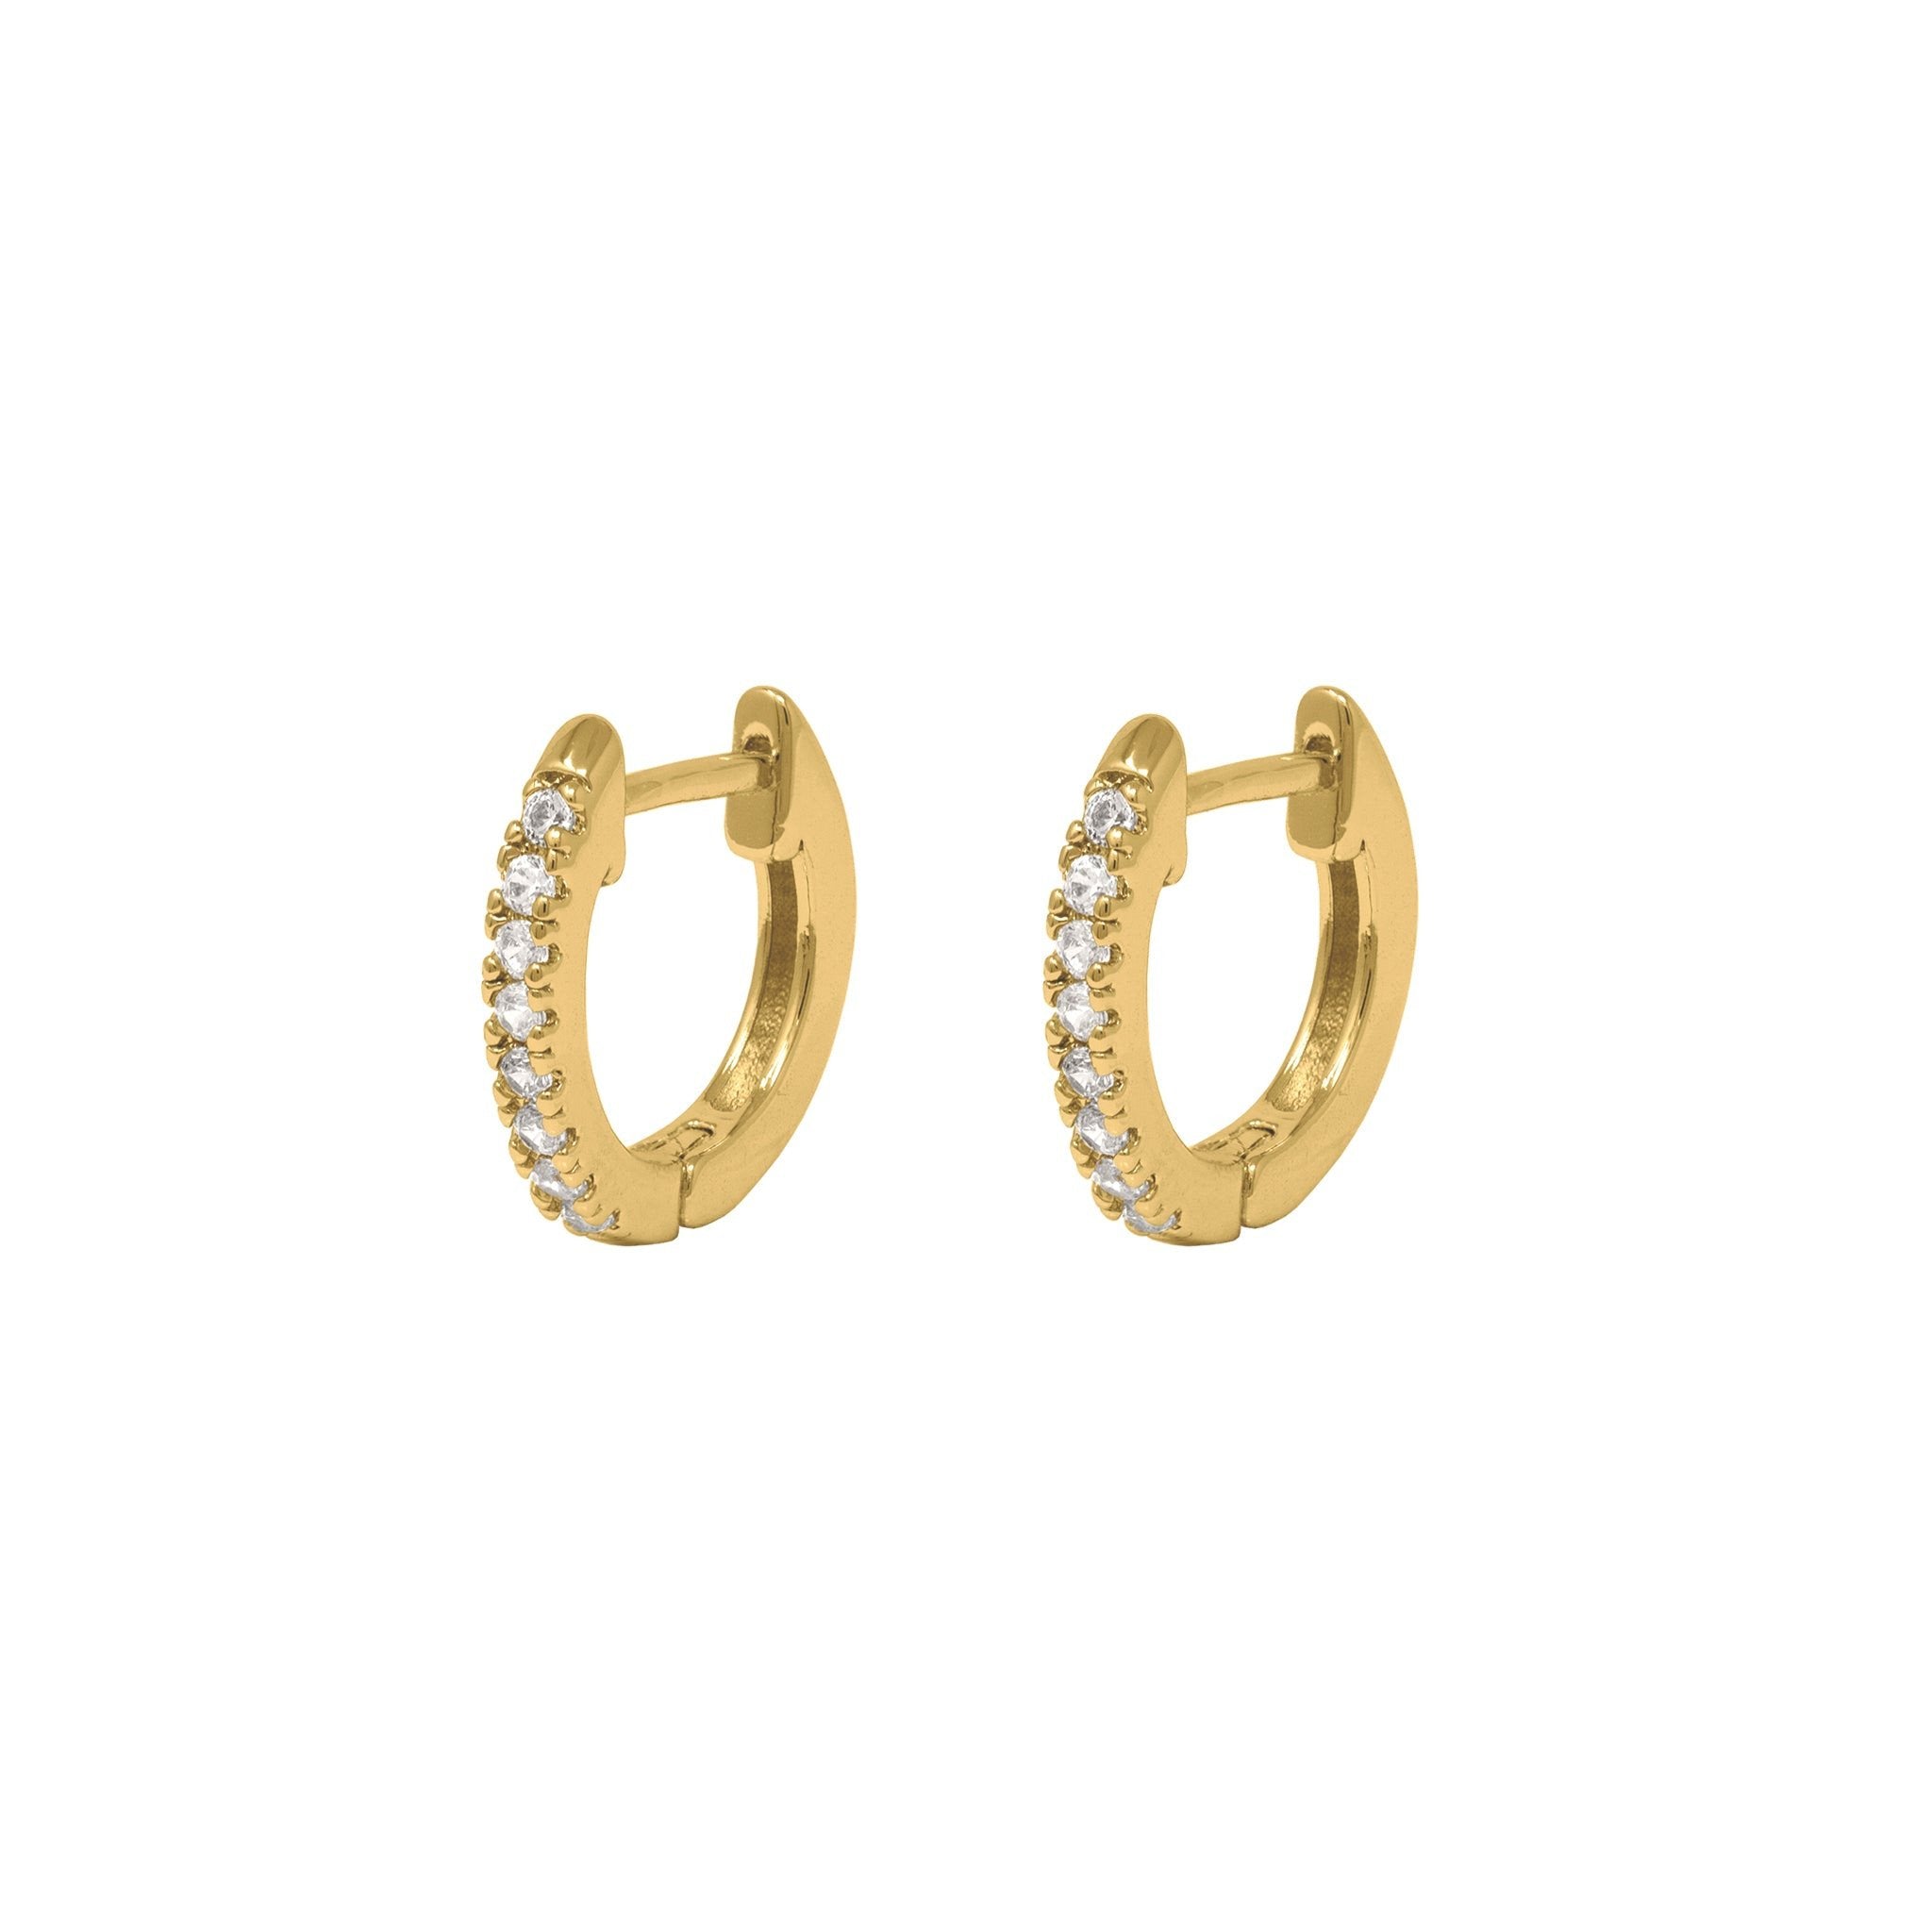 Selina earrings